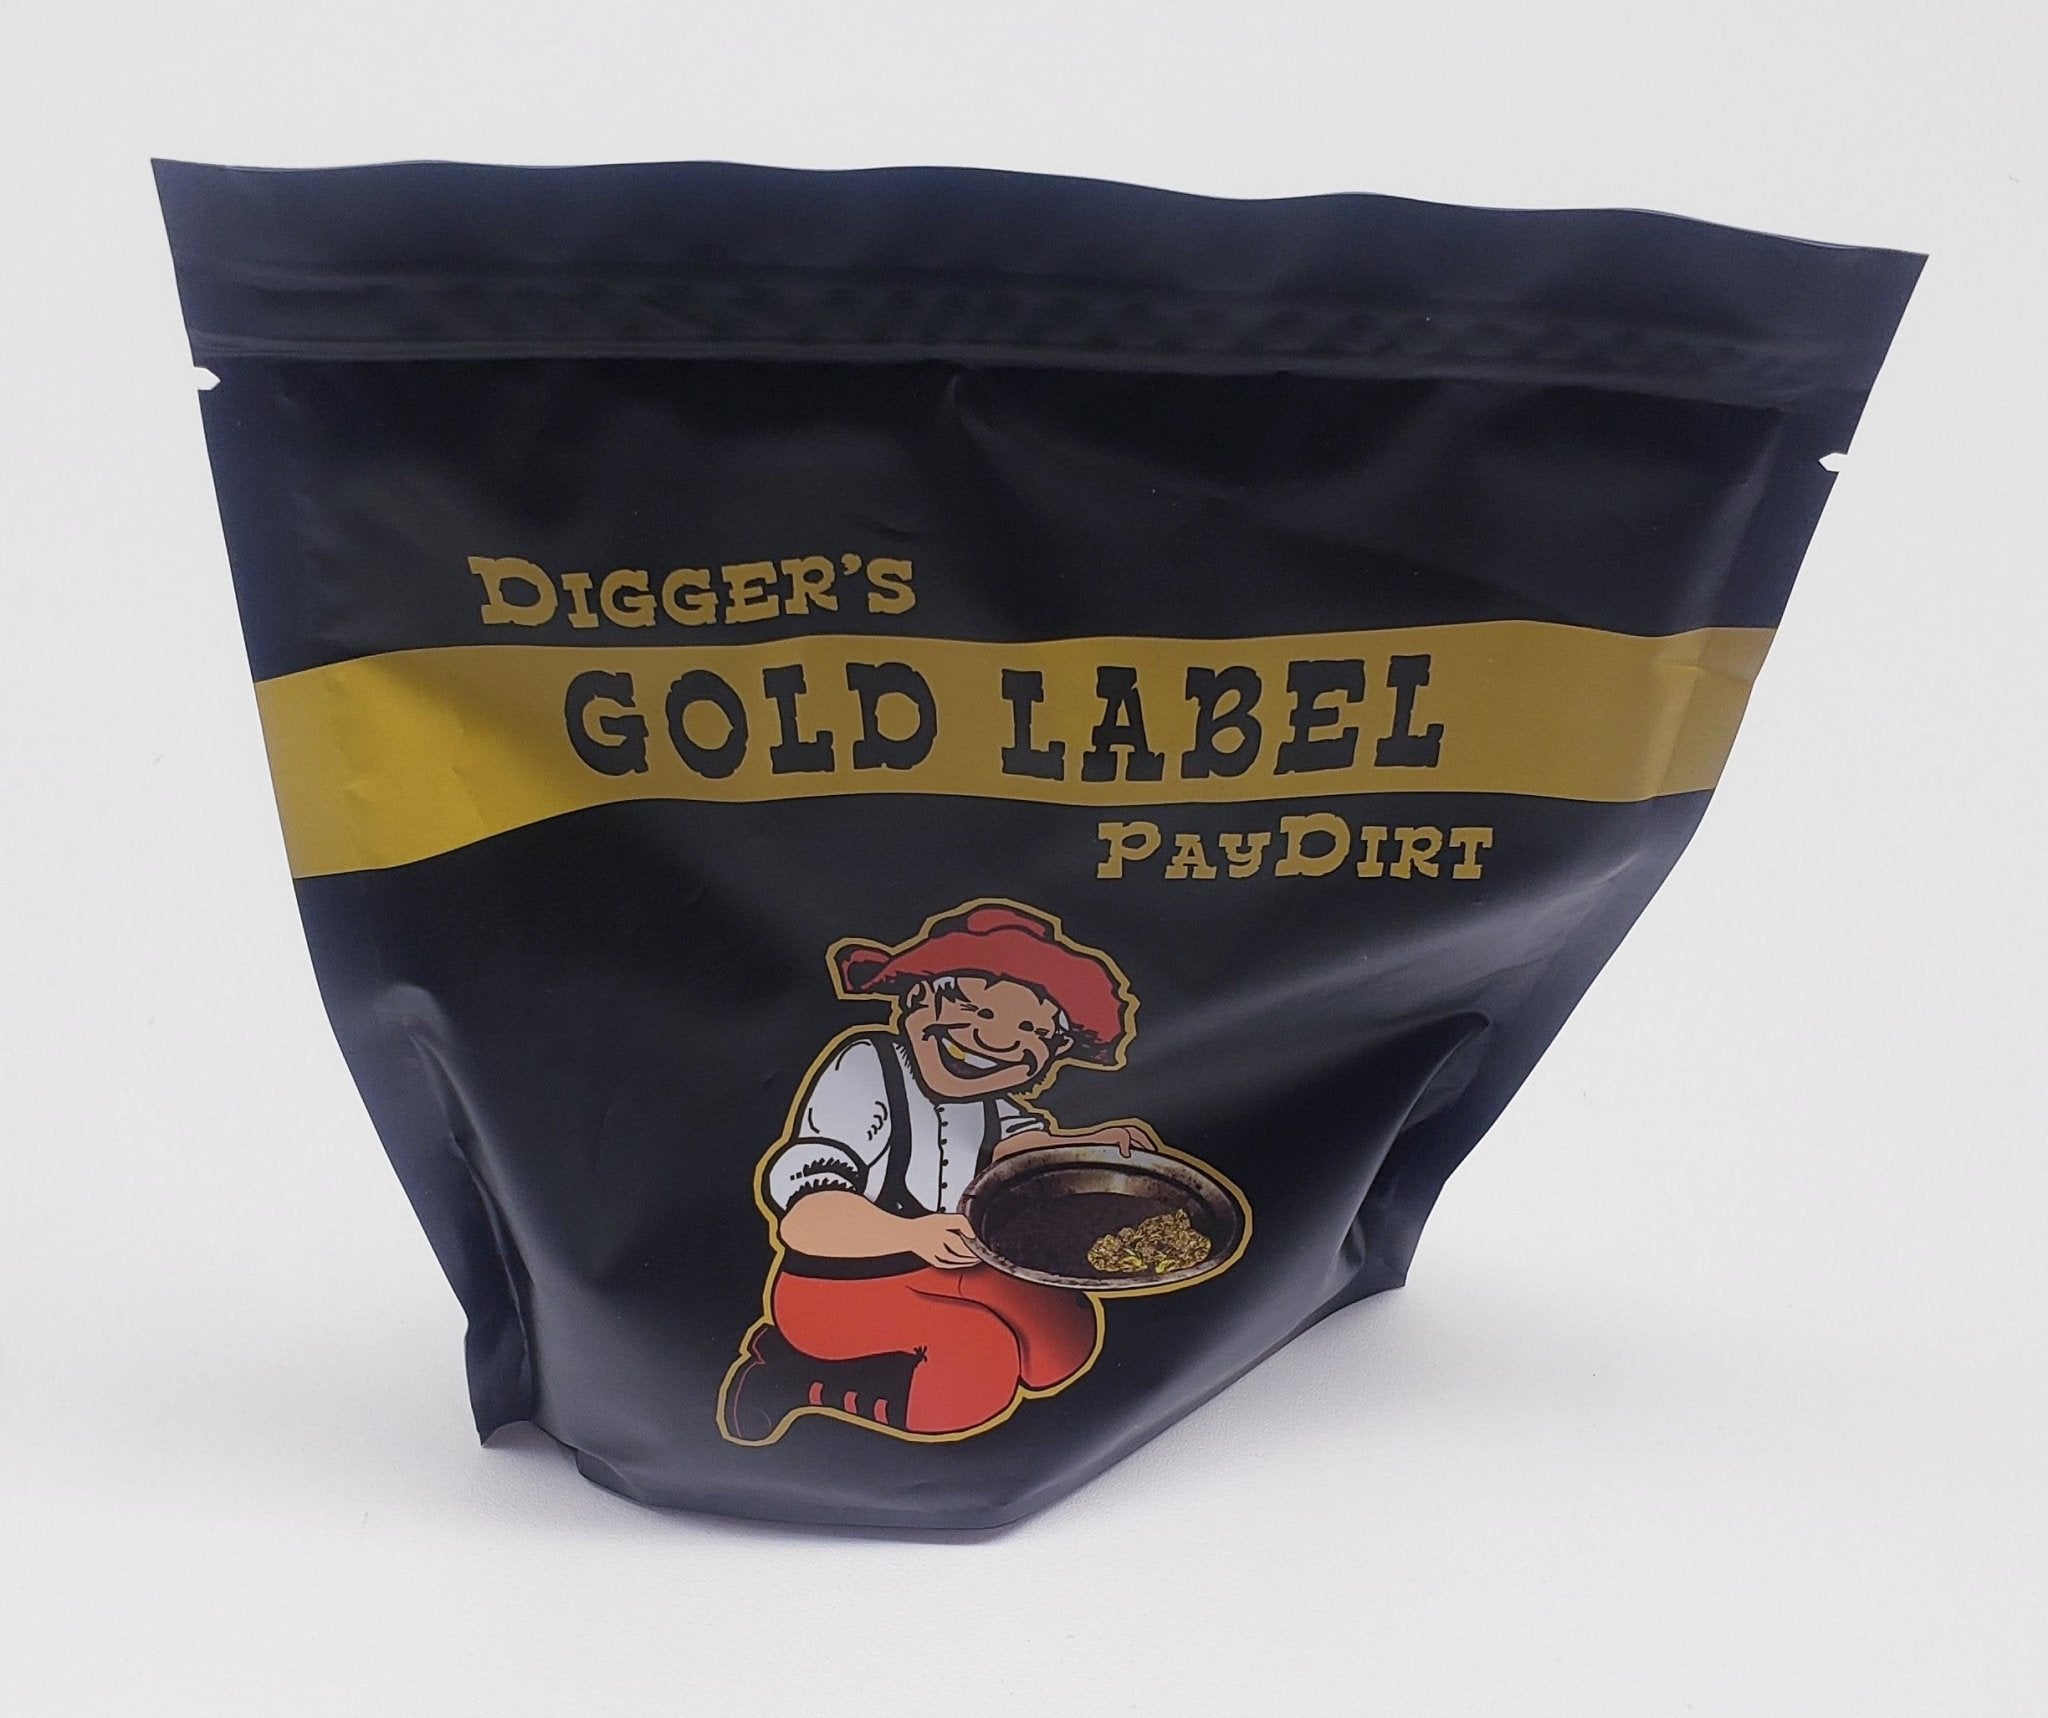 PayDirt LDMA Diggers Dirt $25 bag - Prospectors Dream